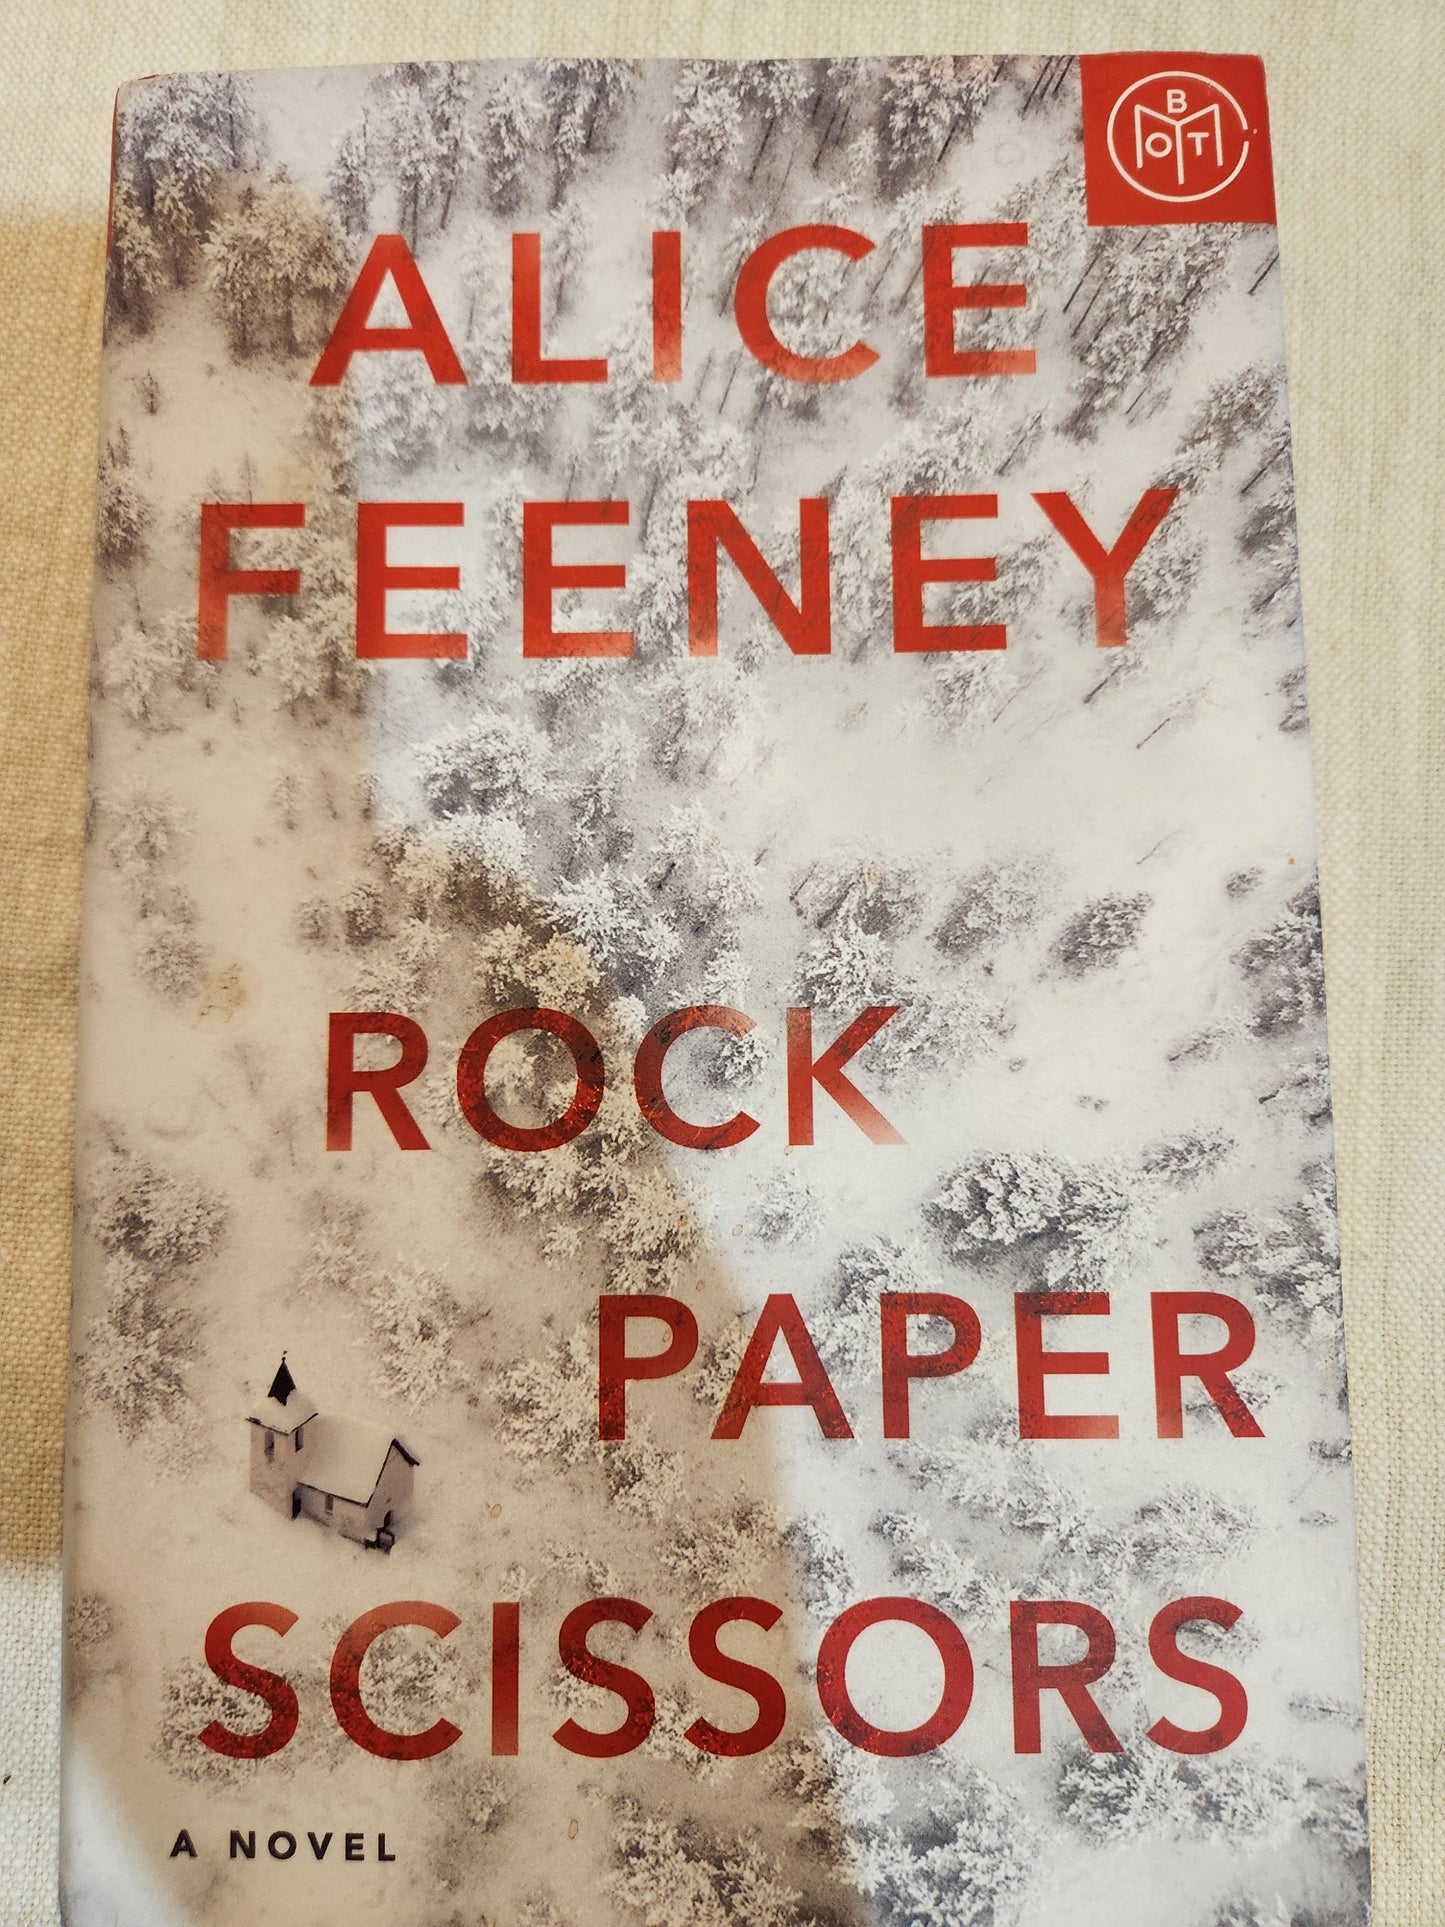 "Rock Paper Scissors" By Alice Feeney